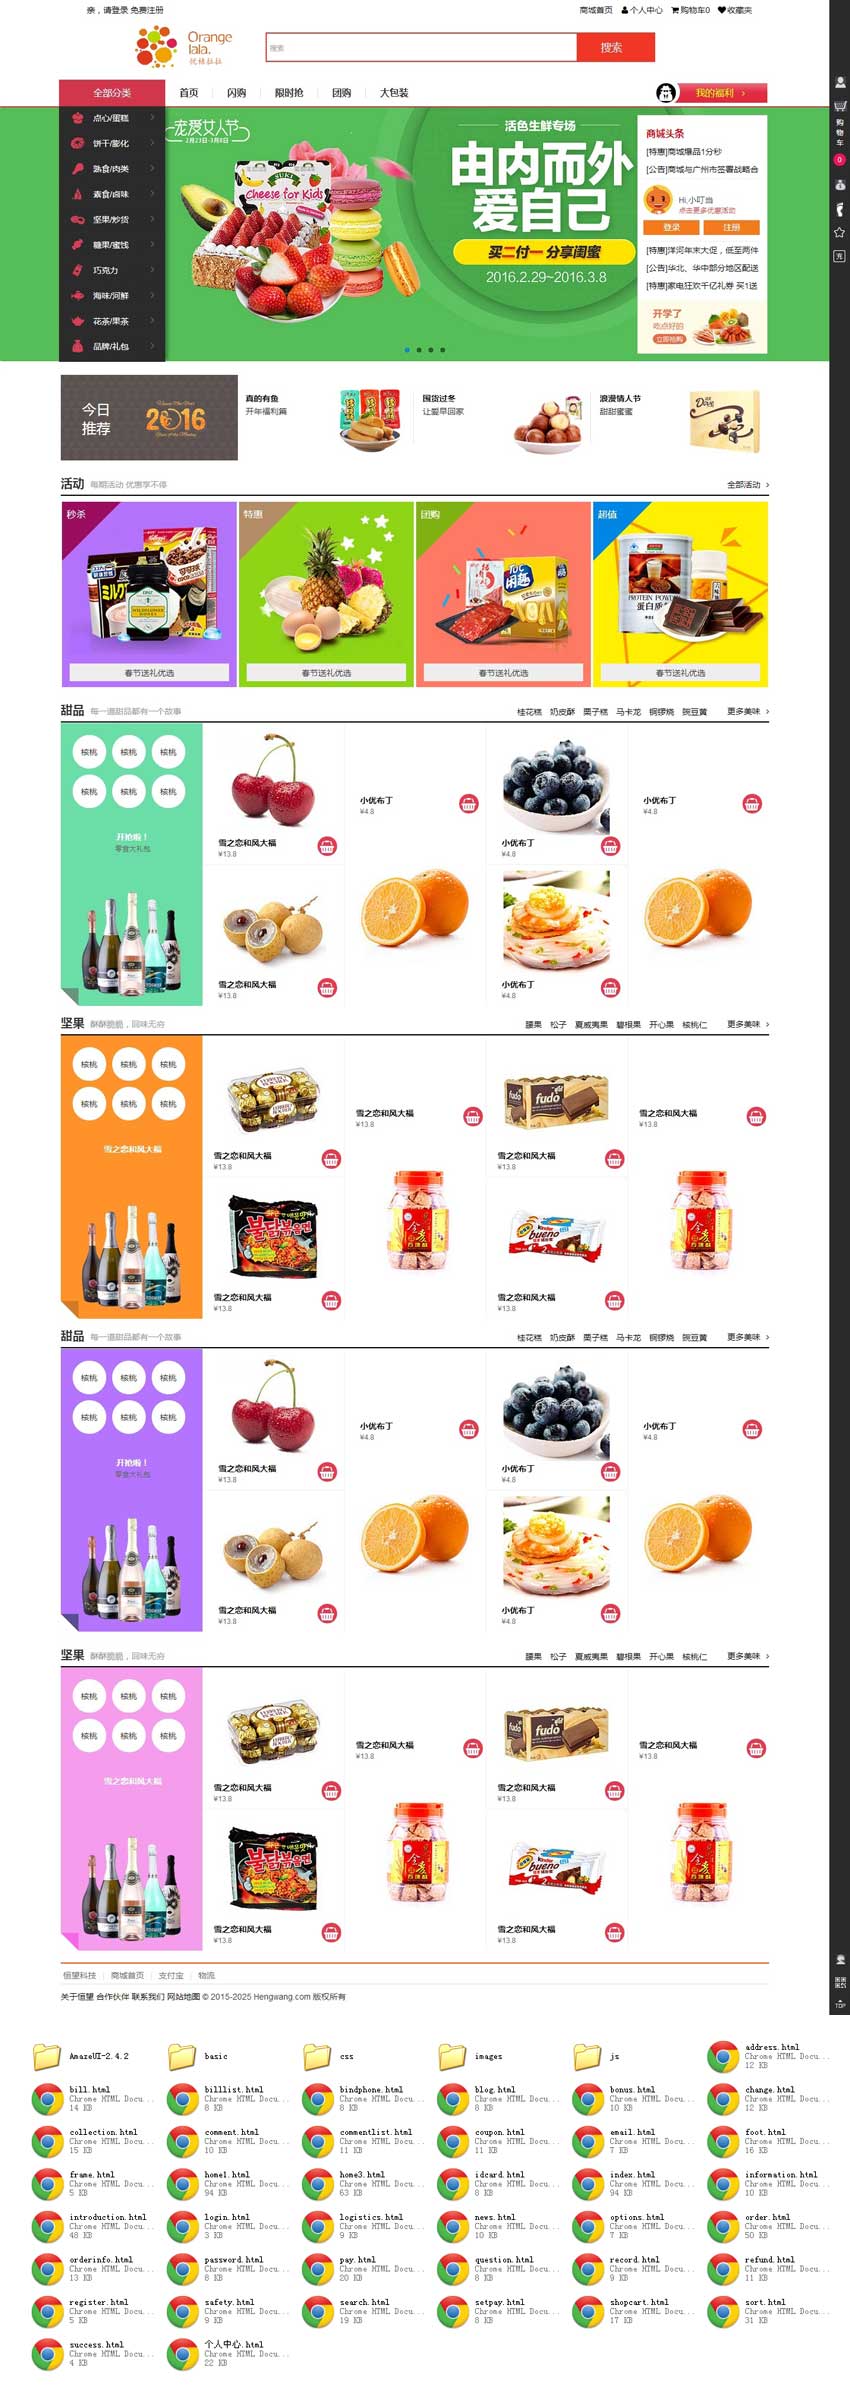 网上食品零售商城网站全套模板html下载